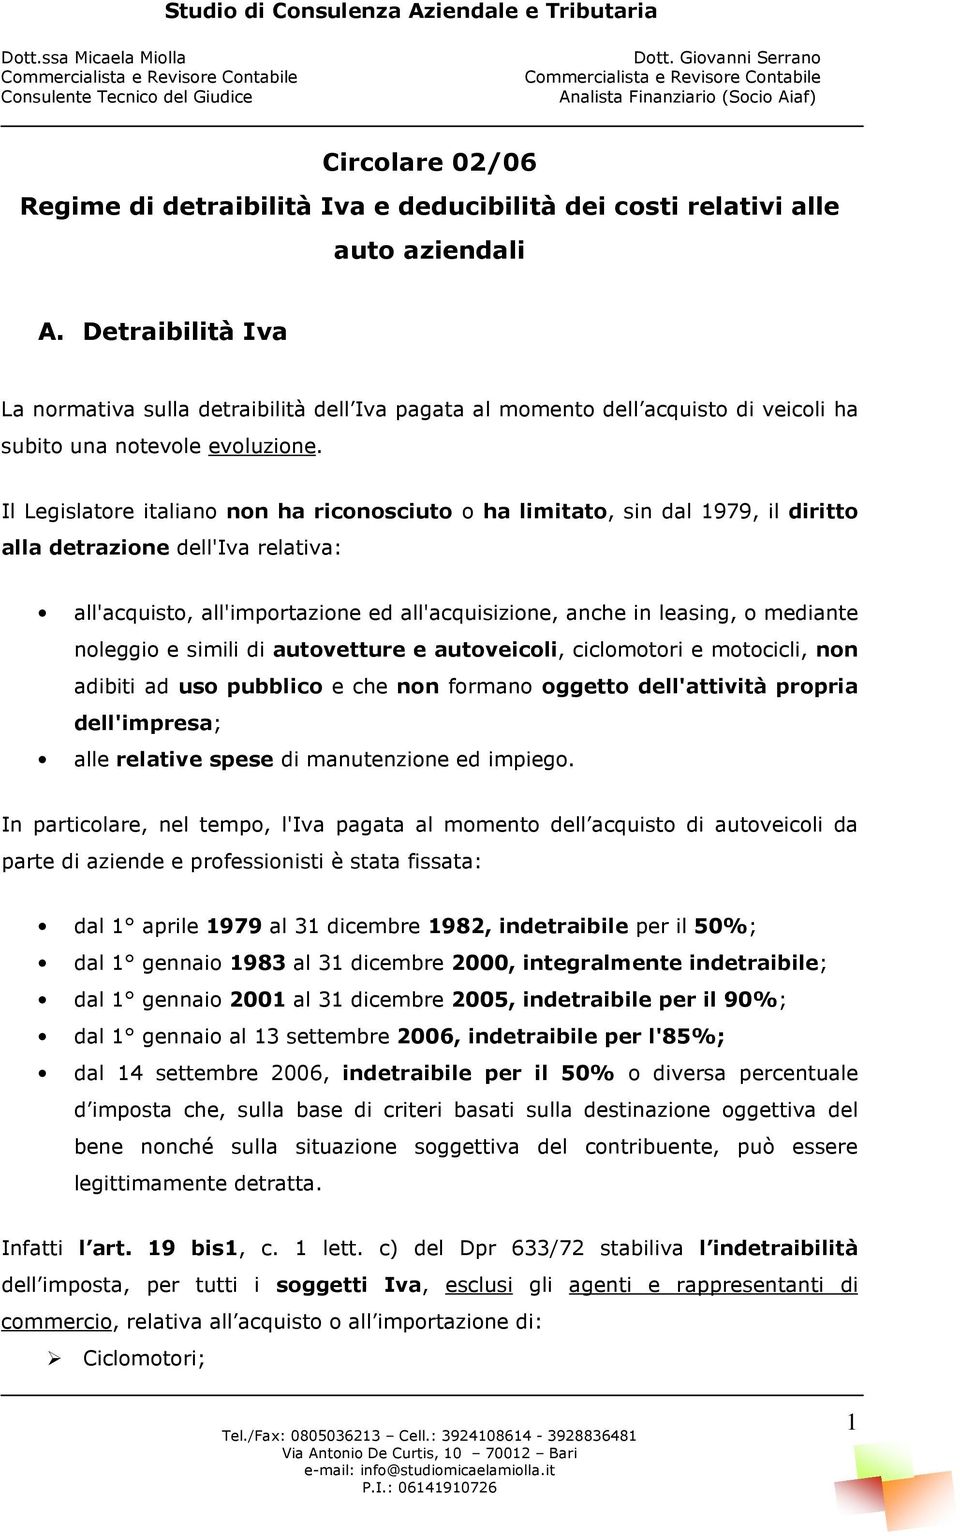 Il Legislatore italiano non ha riconosciuto o ha limitato, sin dal 1979, il diritto alla detrazione dell'iva relativa: all'acquisto, all'importazione ed all'acquisizione, anche in leasing, o mediante